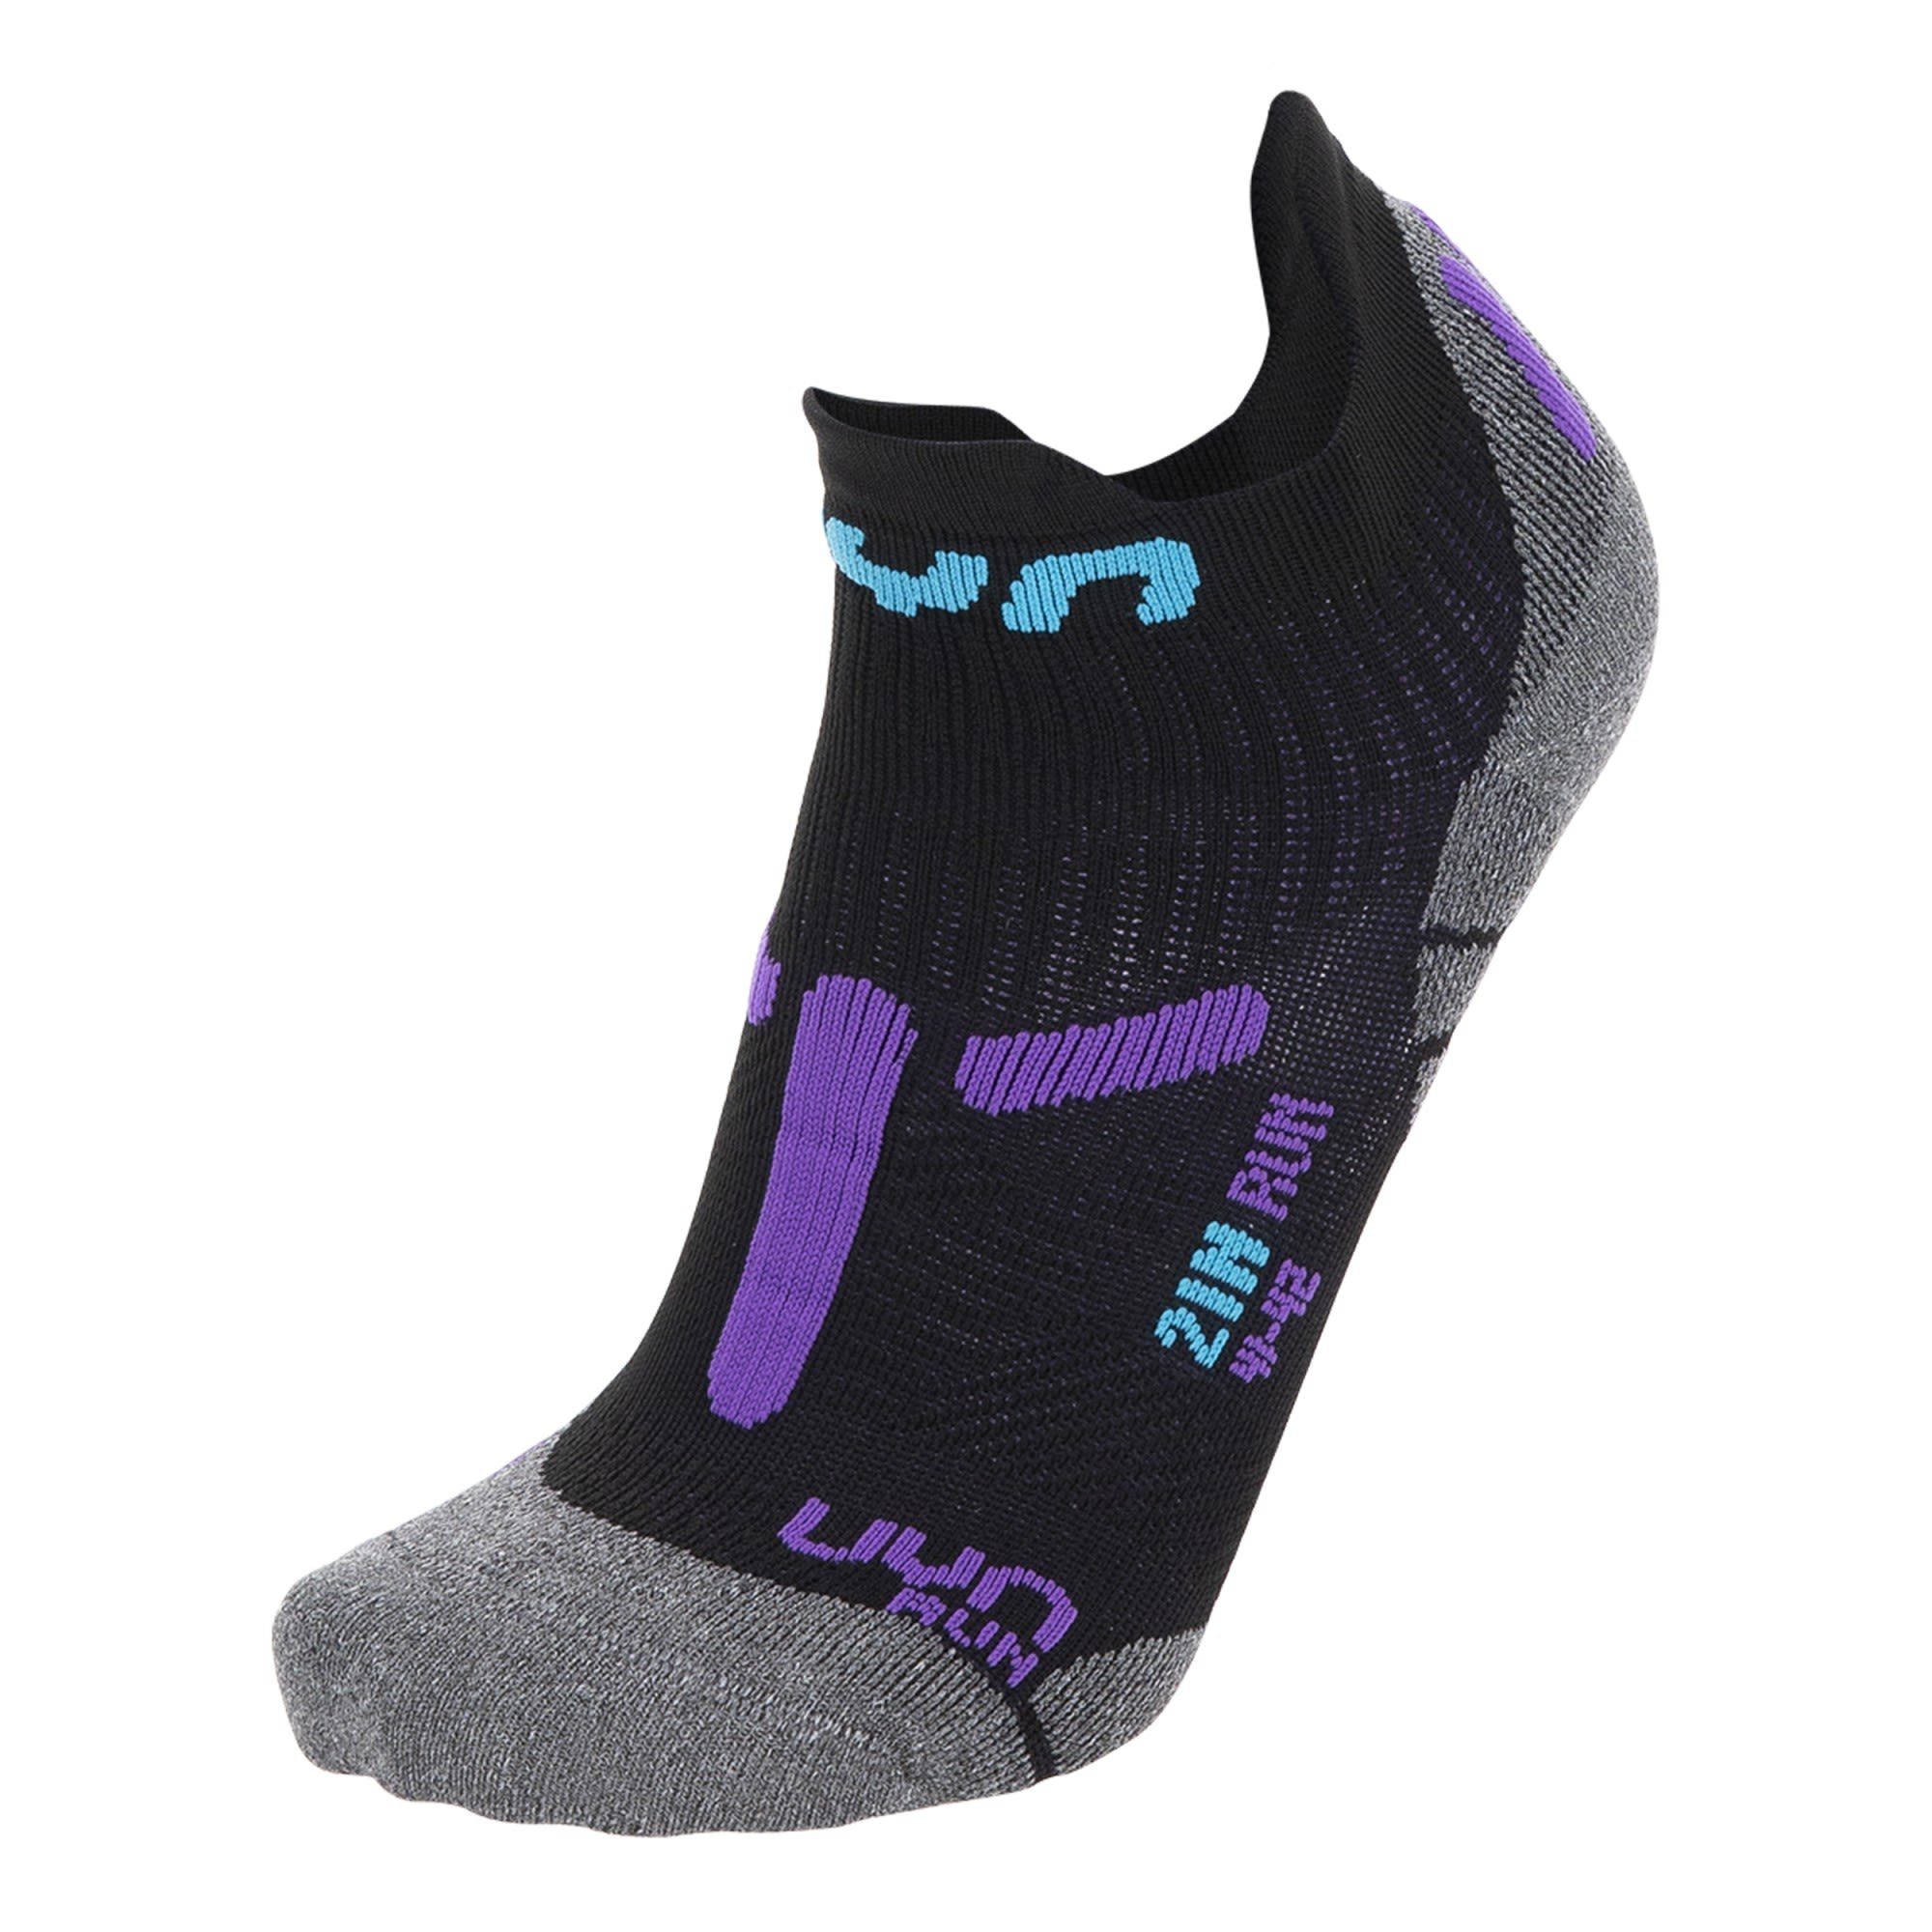 UYN Laufsocken Uyn W Run 2in Socks Damen Kompressionssocken Black - Purple